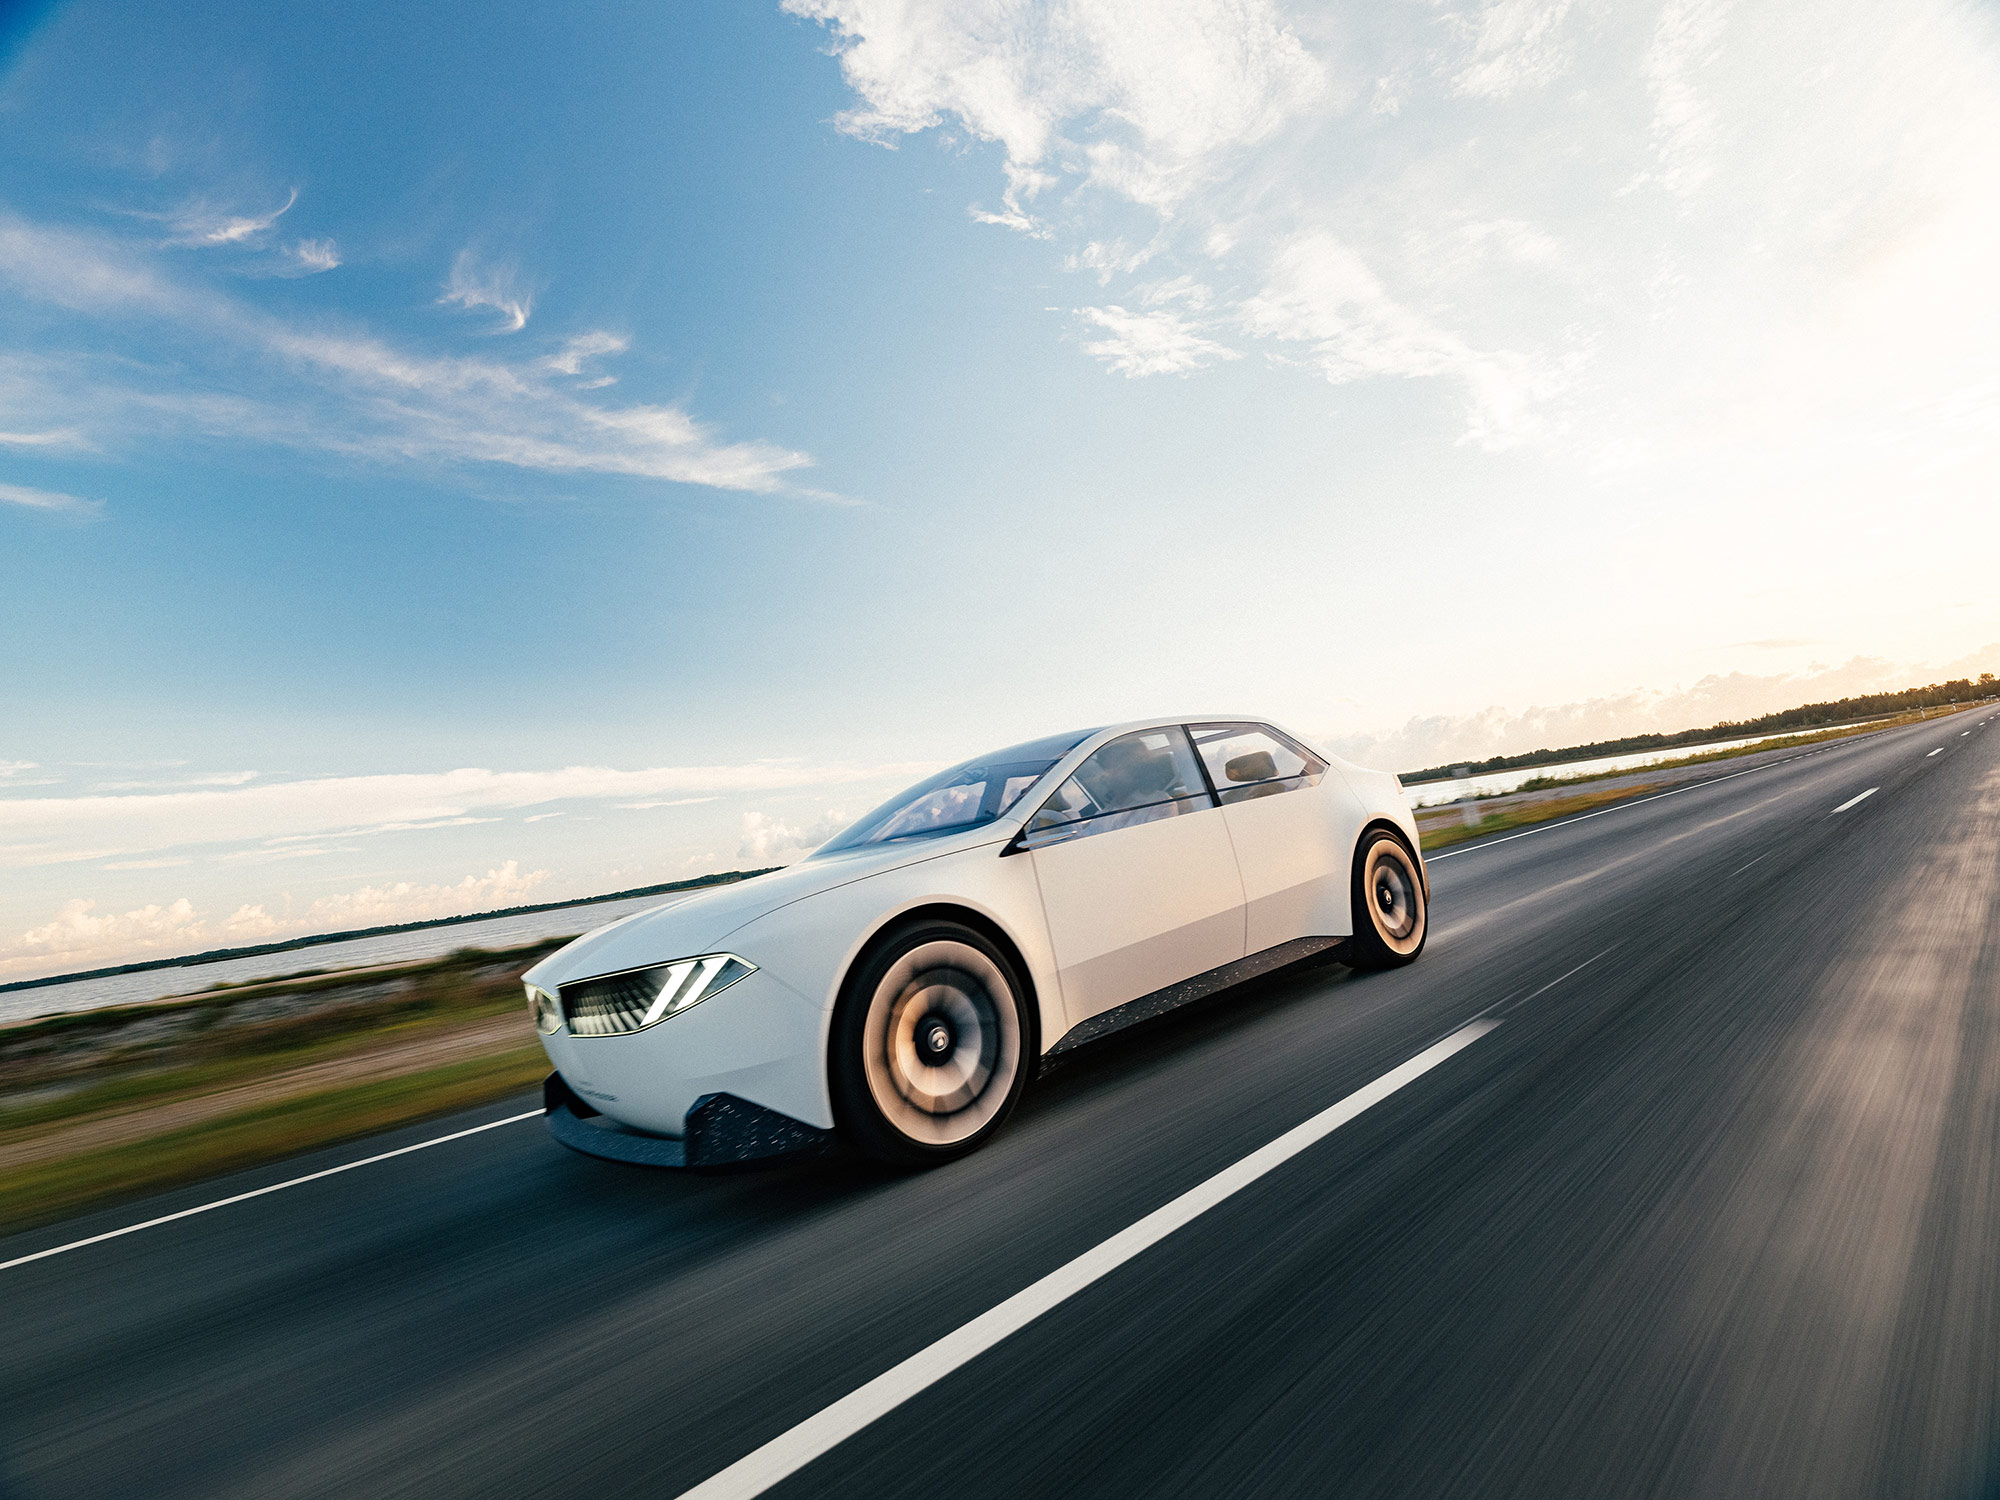 致敬历史，更定义未来 BMW新世代概念车智能座舱为热爱驾驶者设计